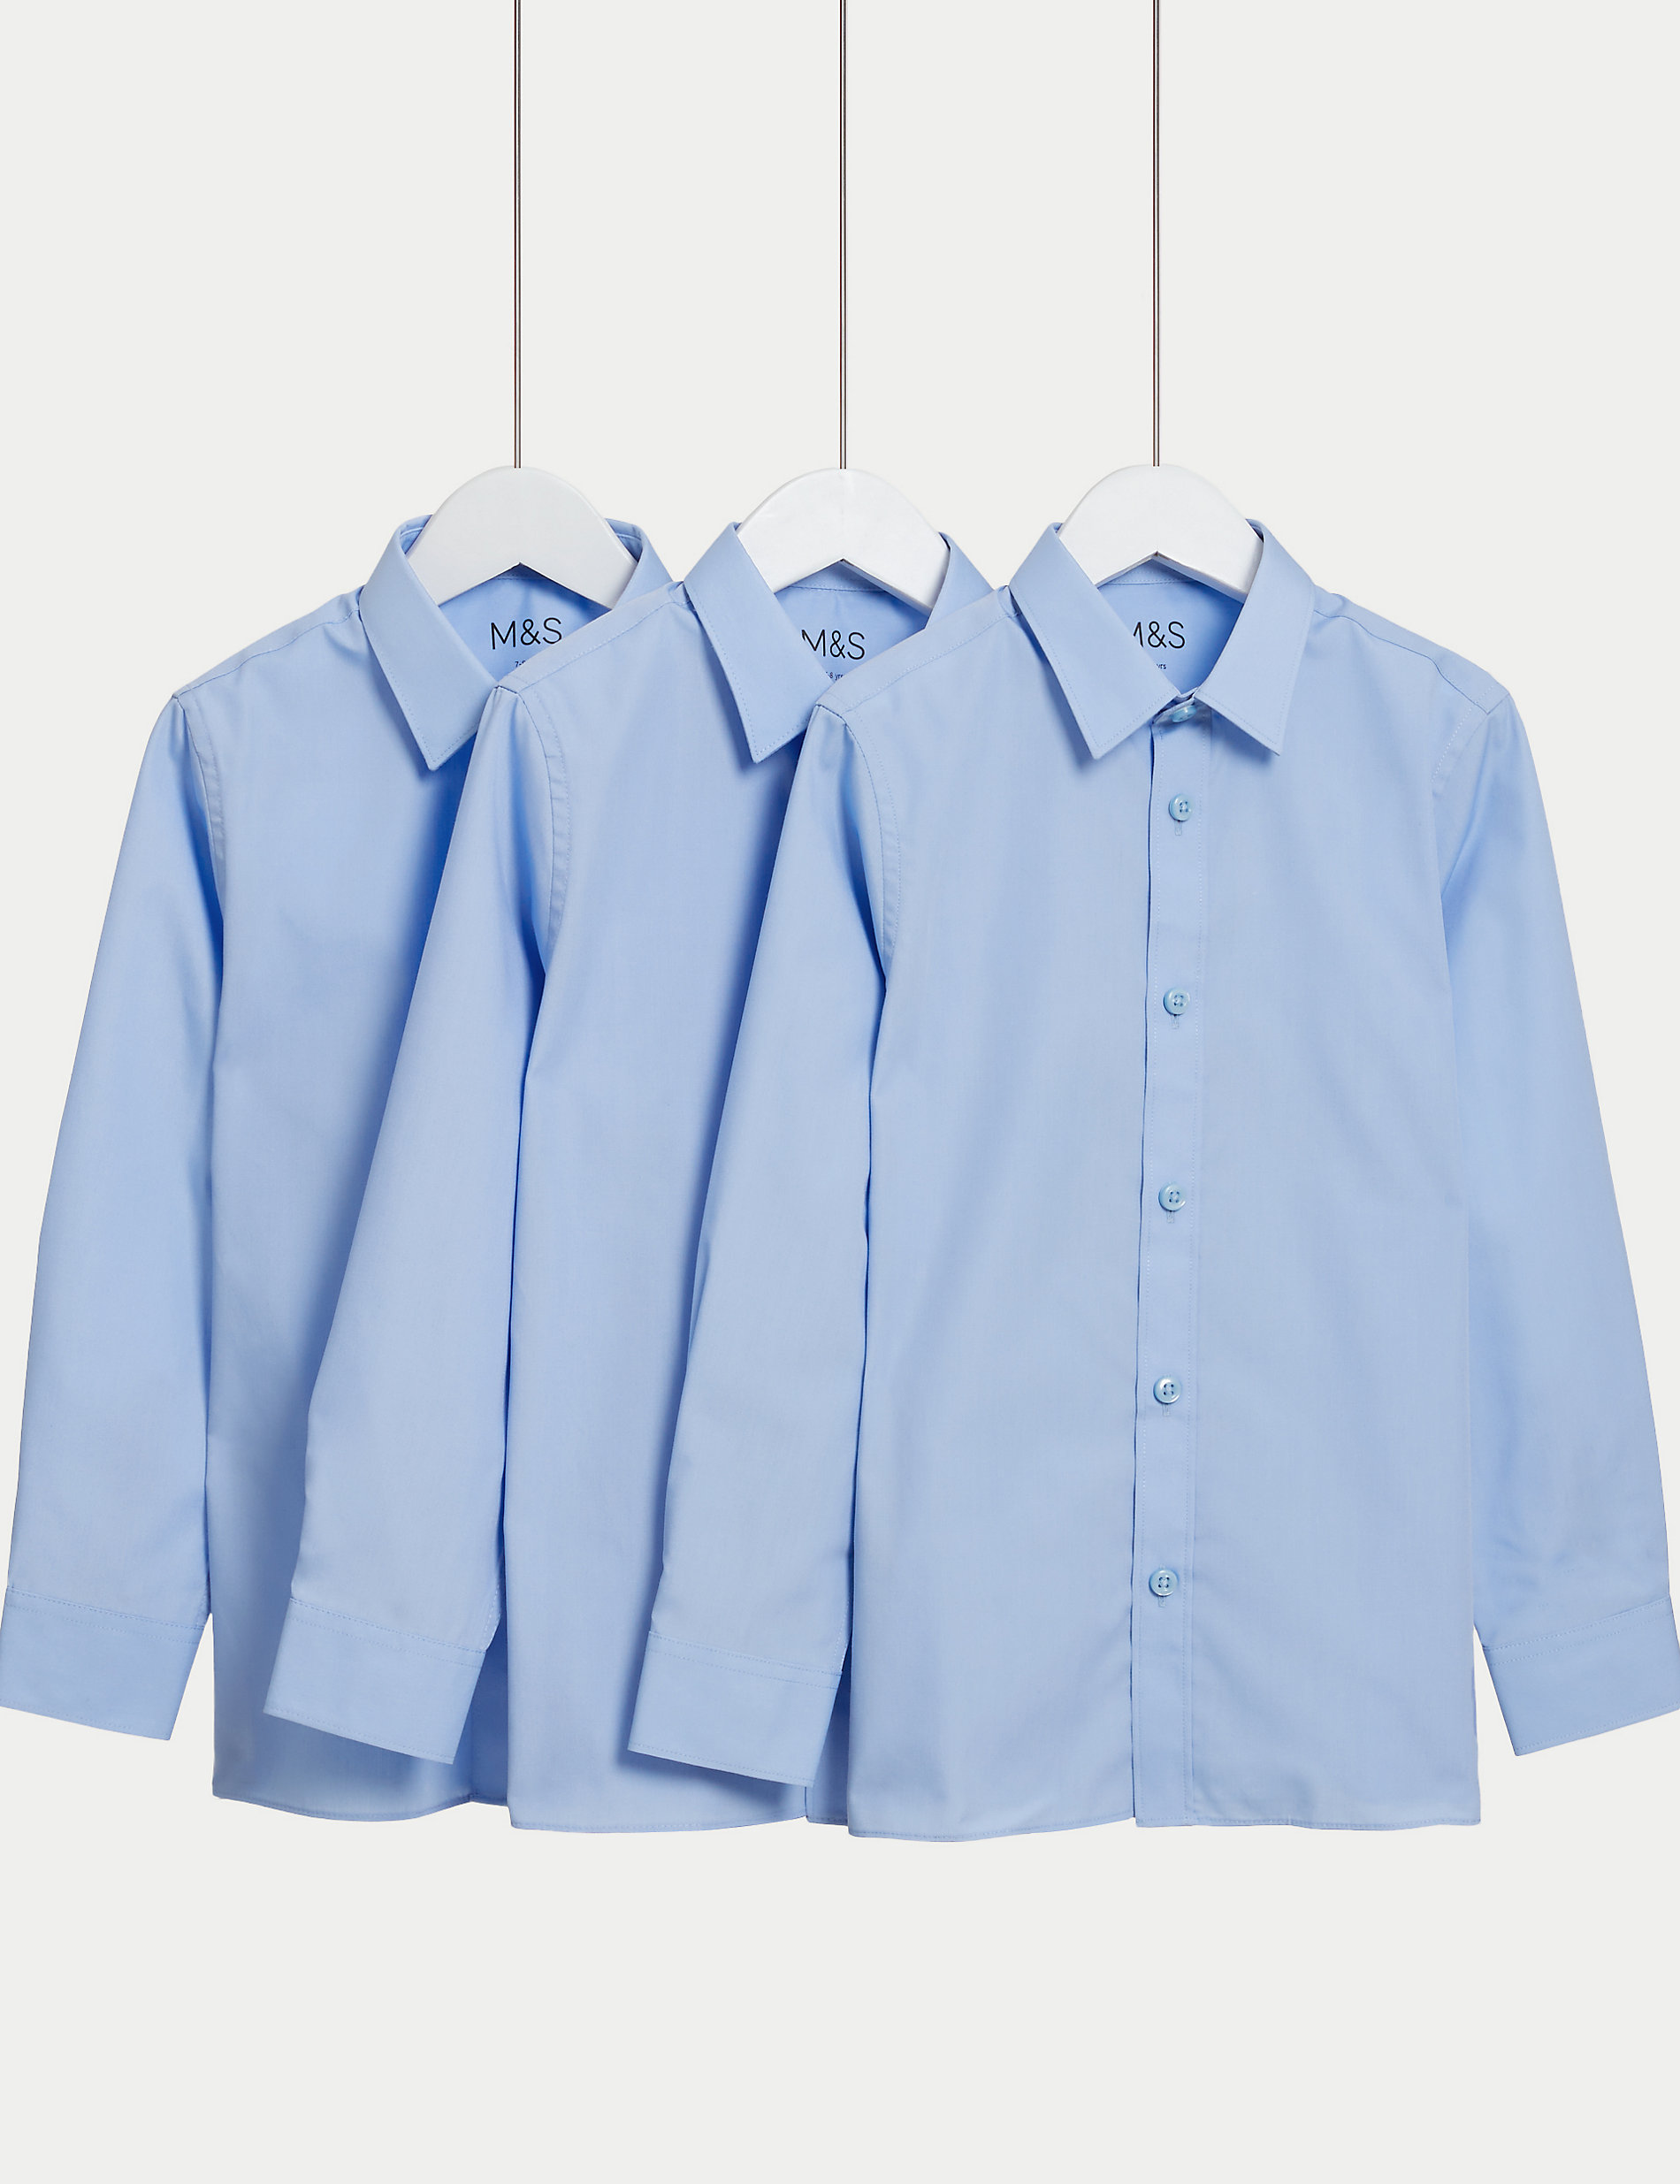 Σχολικά πουκάμισα για αγόρια με εύκολο σιδέρωμα σε σετ των 3 (2-16 ετών)